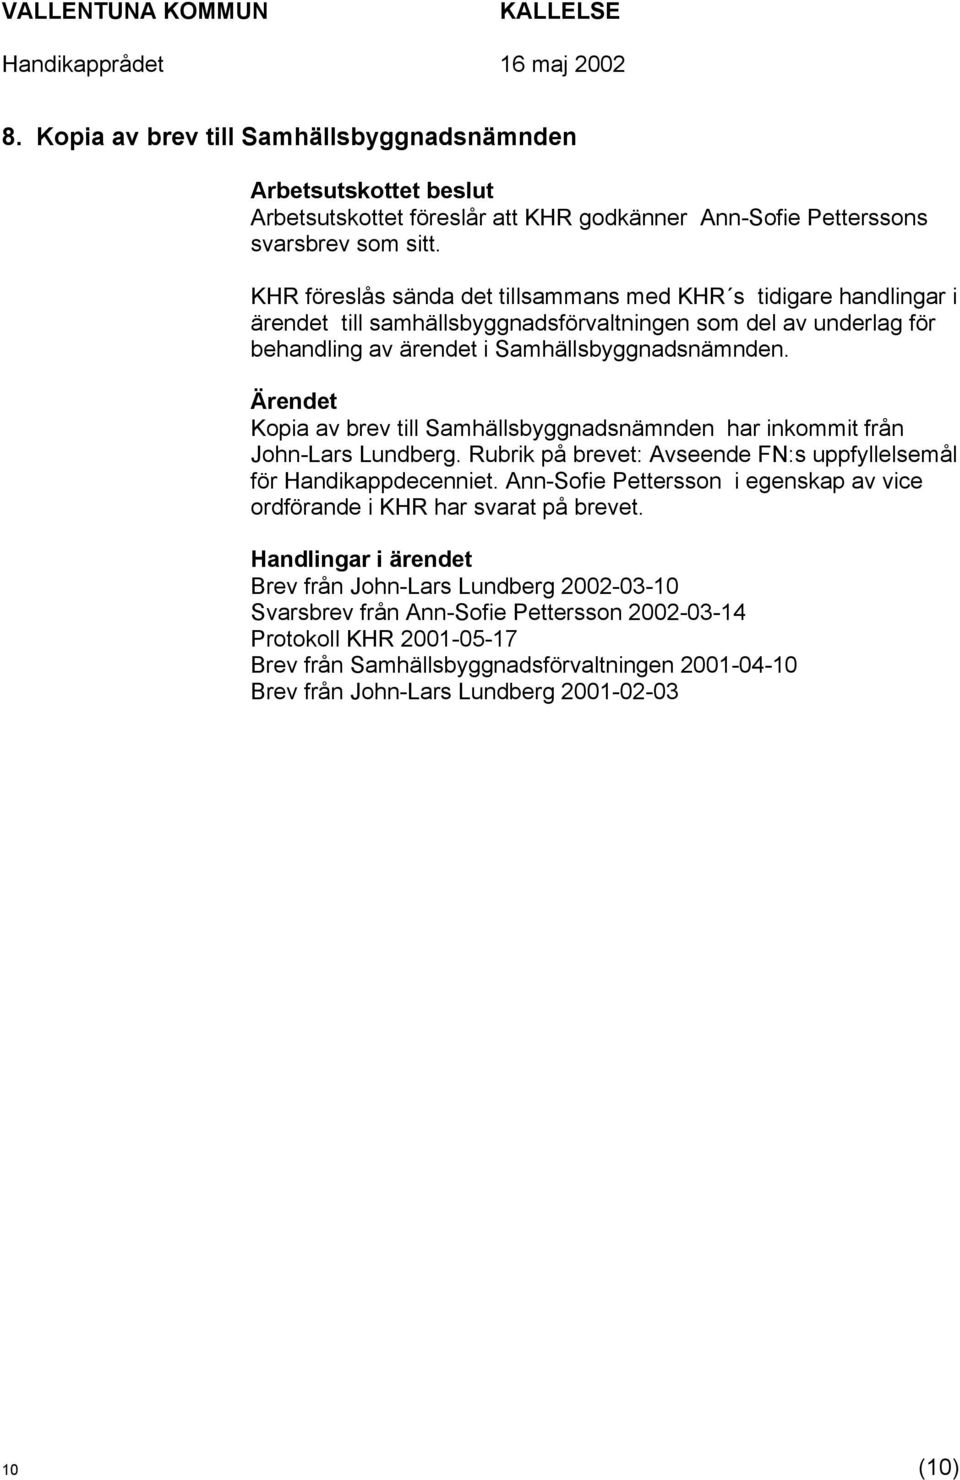 Kopia av brev till Samhällsbyggnadsnämnden har inkommit från John-Lars Lundberg. Rubrik på brevet: Avseende FN:s uppfyllelsemål för Handikappdecenniet.